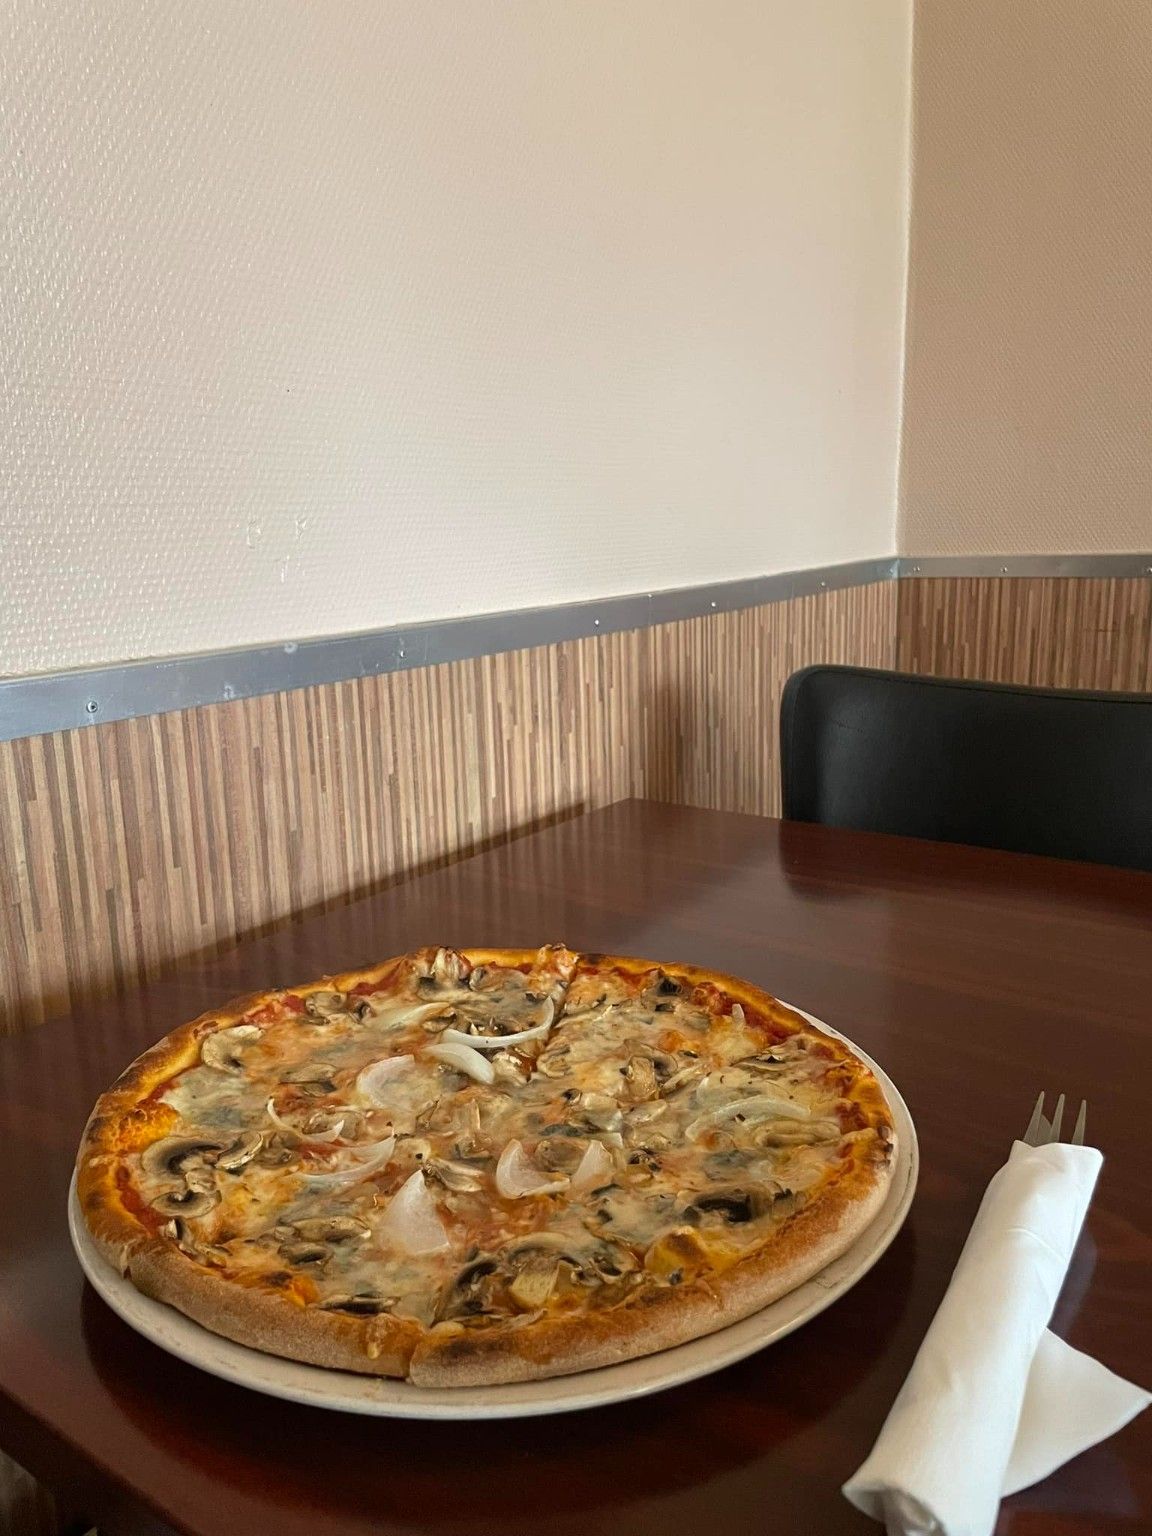 19. Gorgonzola Pizza